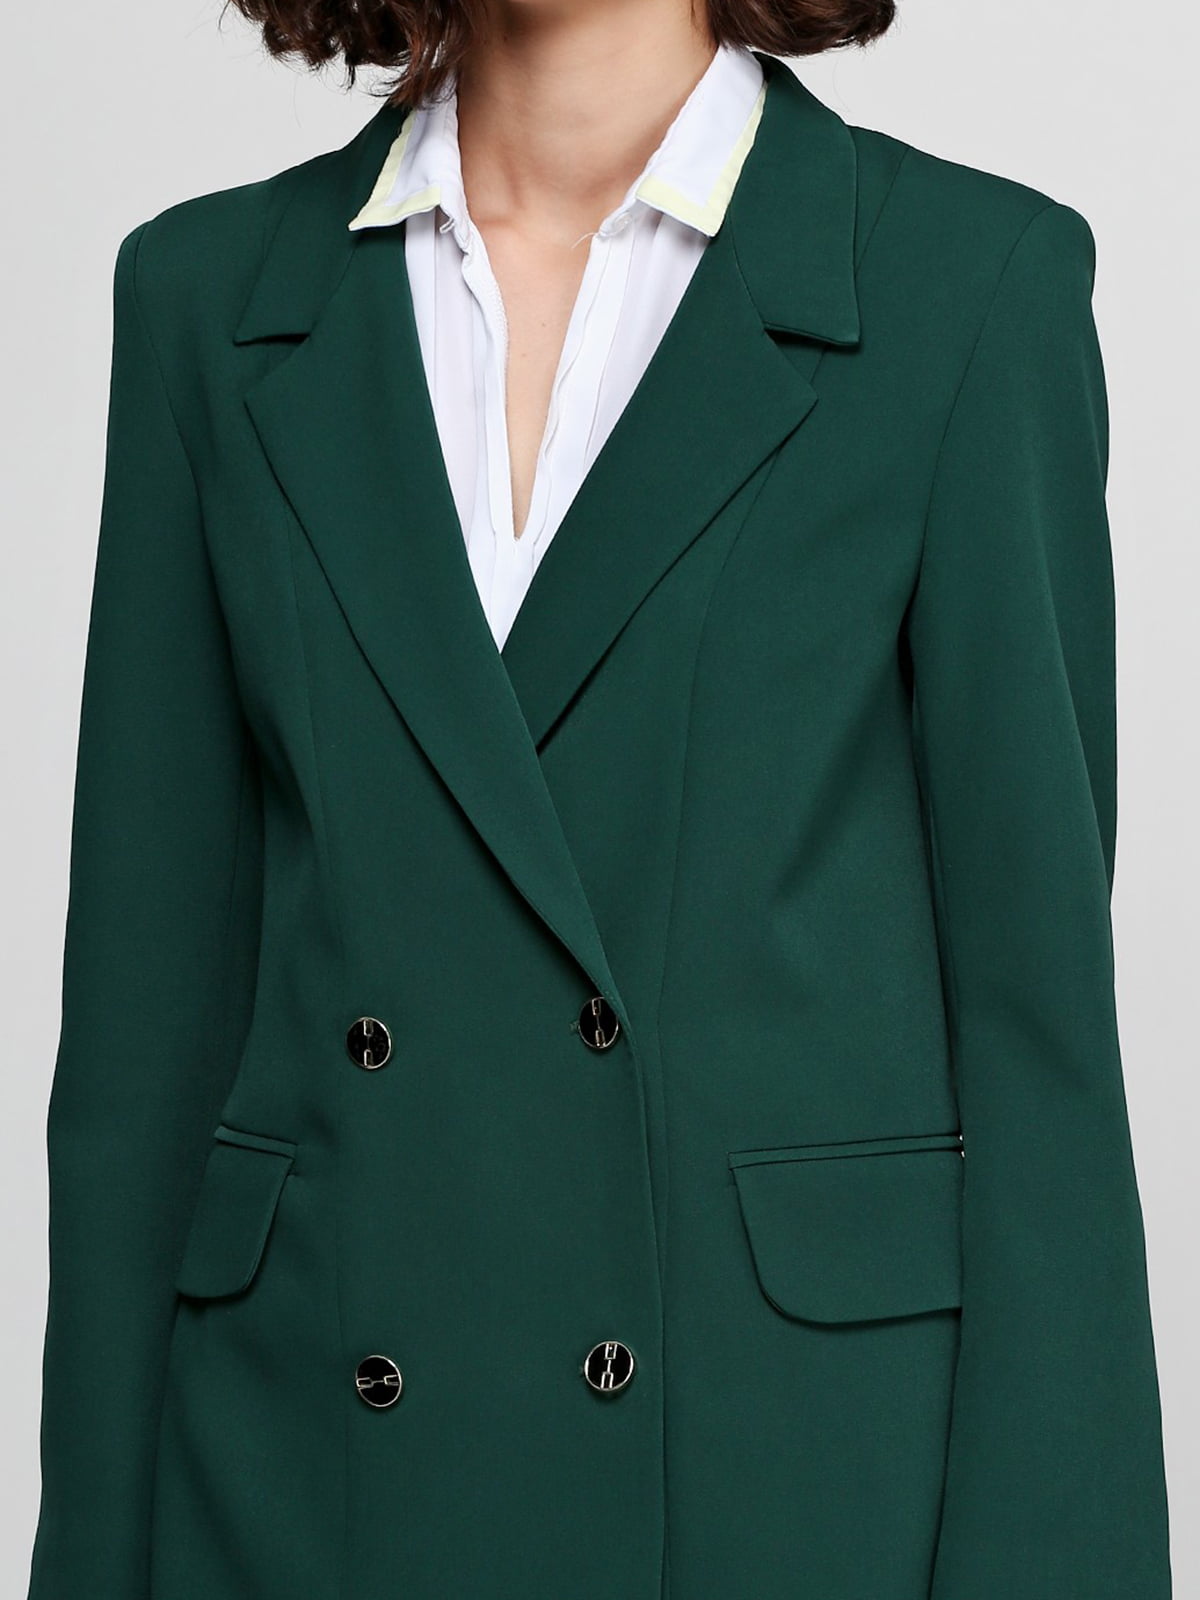 Пиджаки зеленого цвета